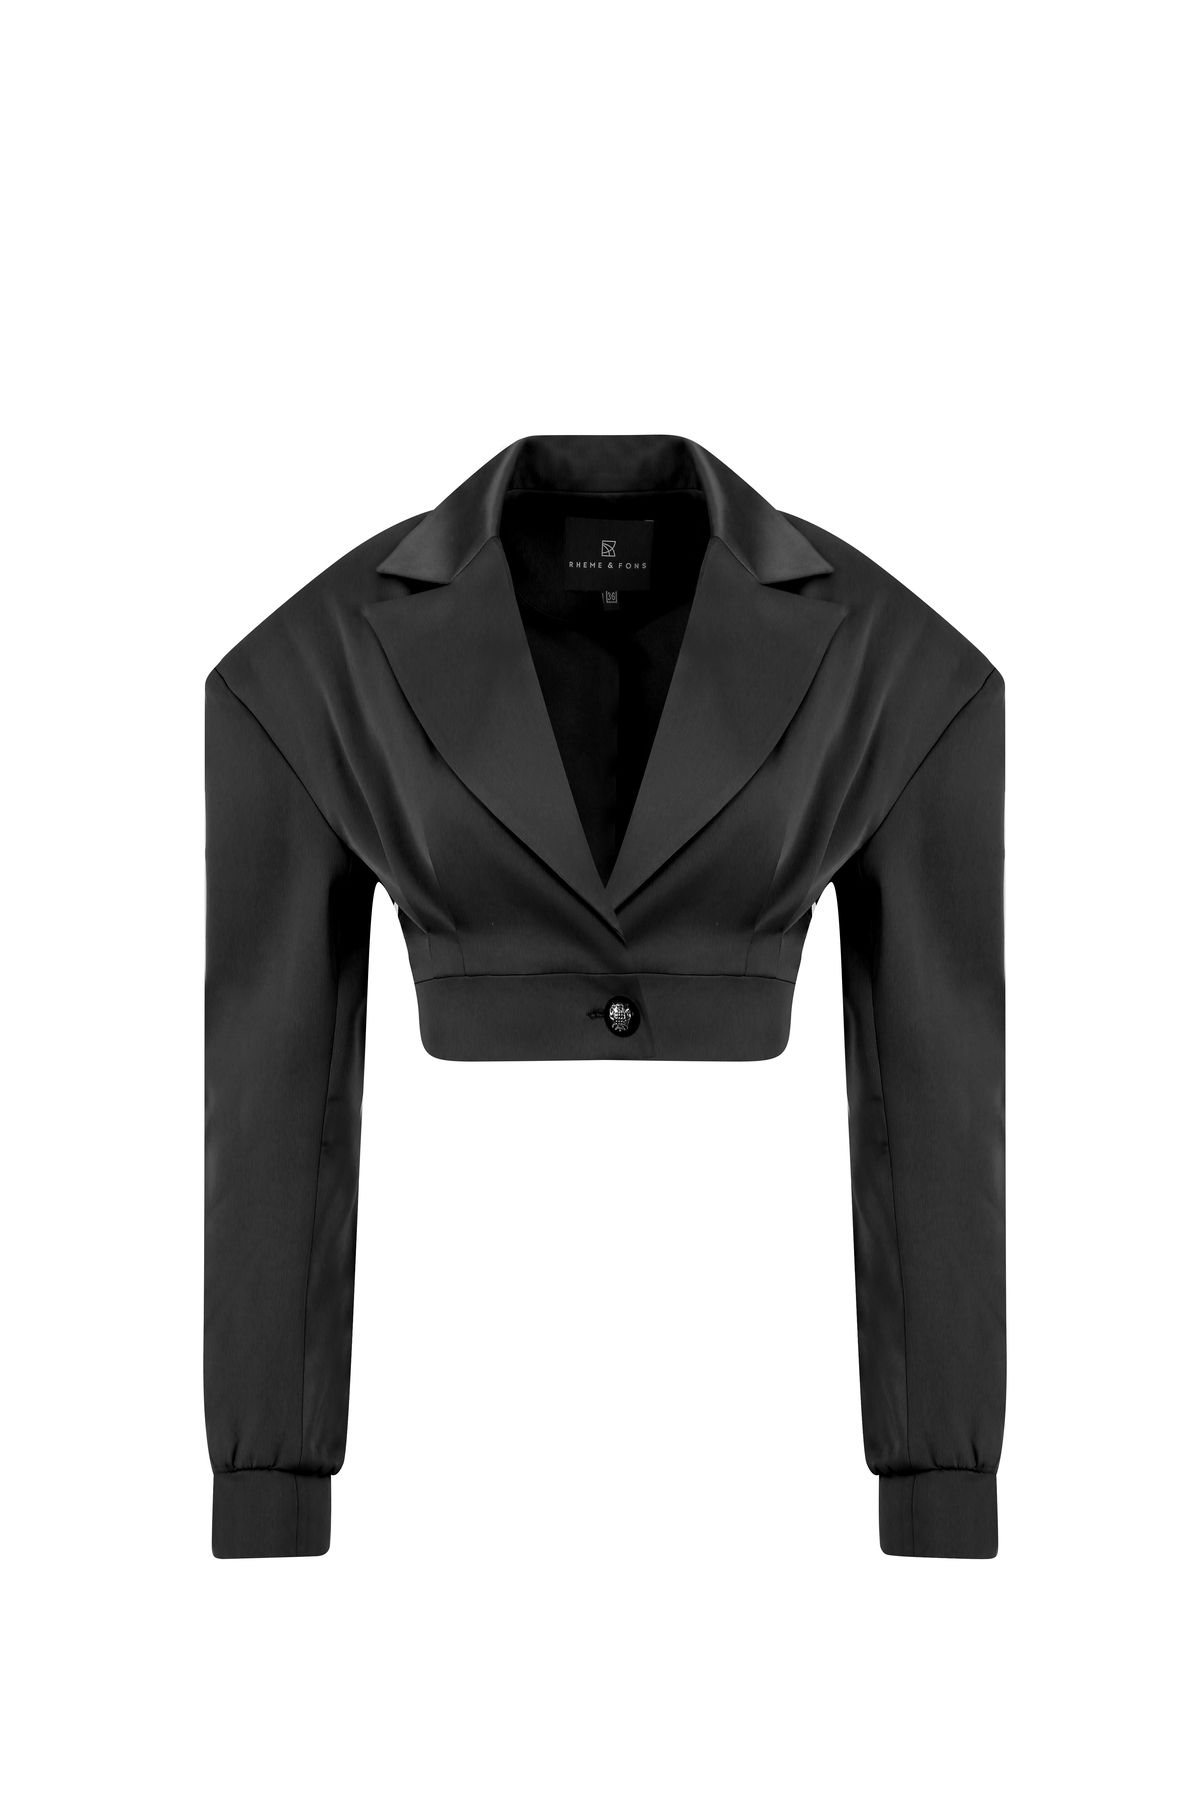 Rheme And Fons Özel Tasarım Couture El Işçiliği Düğme Detay Siyah Kadın Blazer Ceket